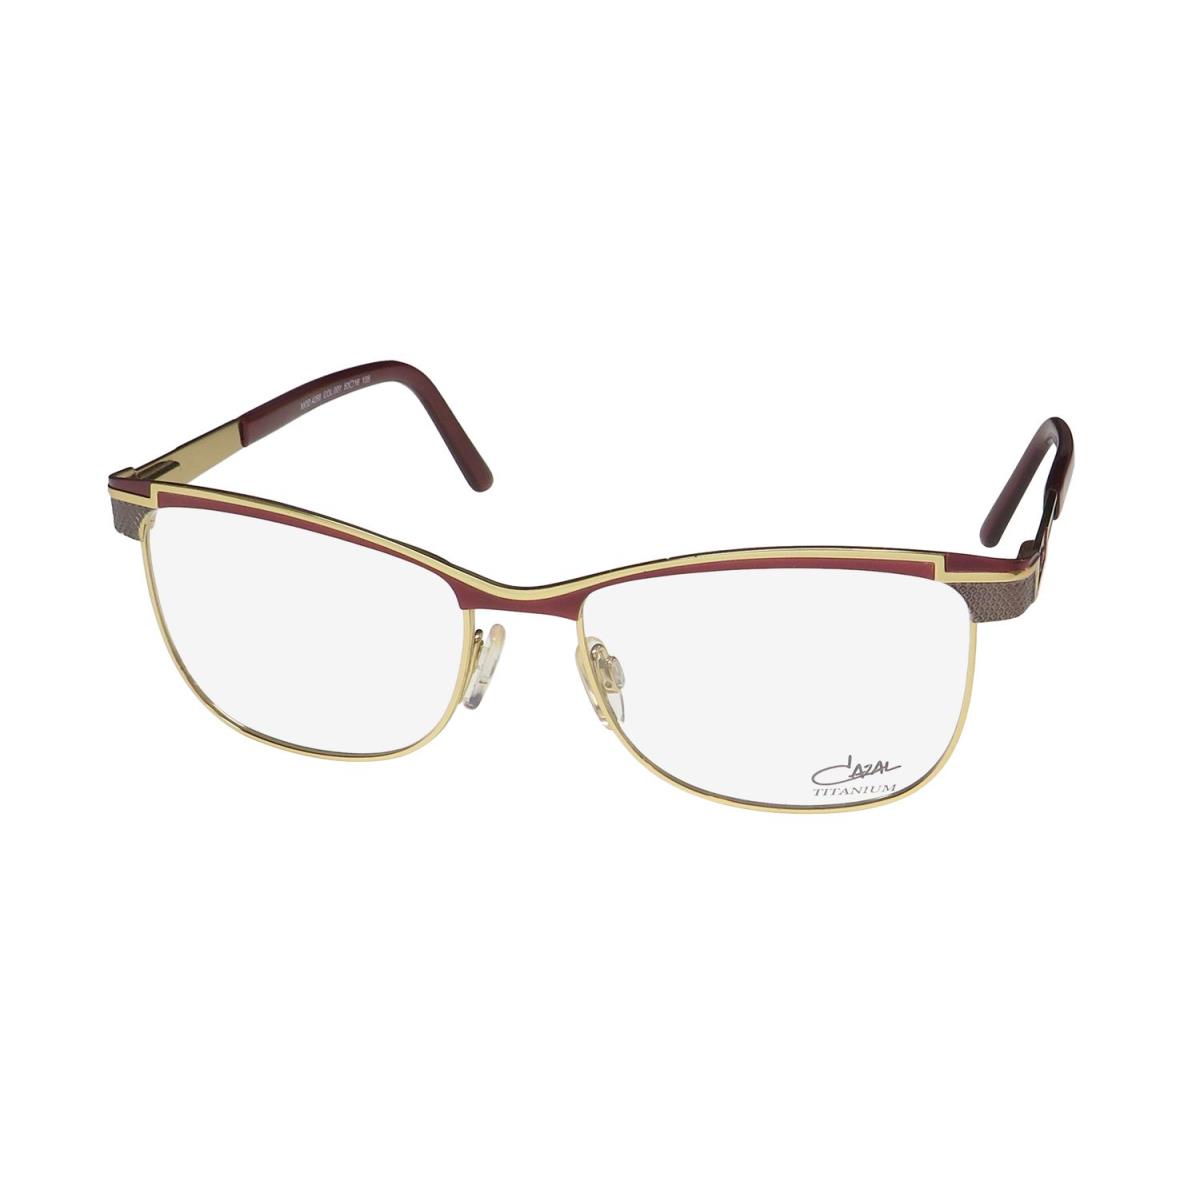 Cazal 4268 Cat Eye Titanium Metal Full-rim Imported Rare Eyeglass Frame/glasses Burgundy / Gold